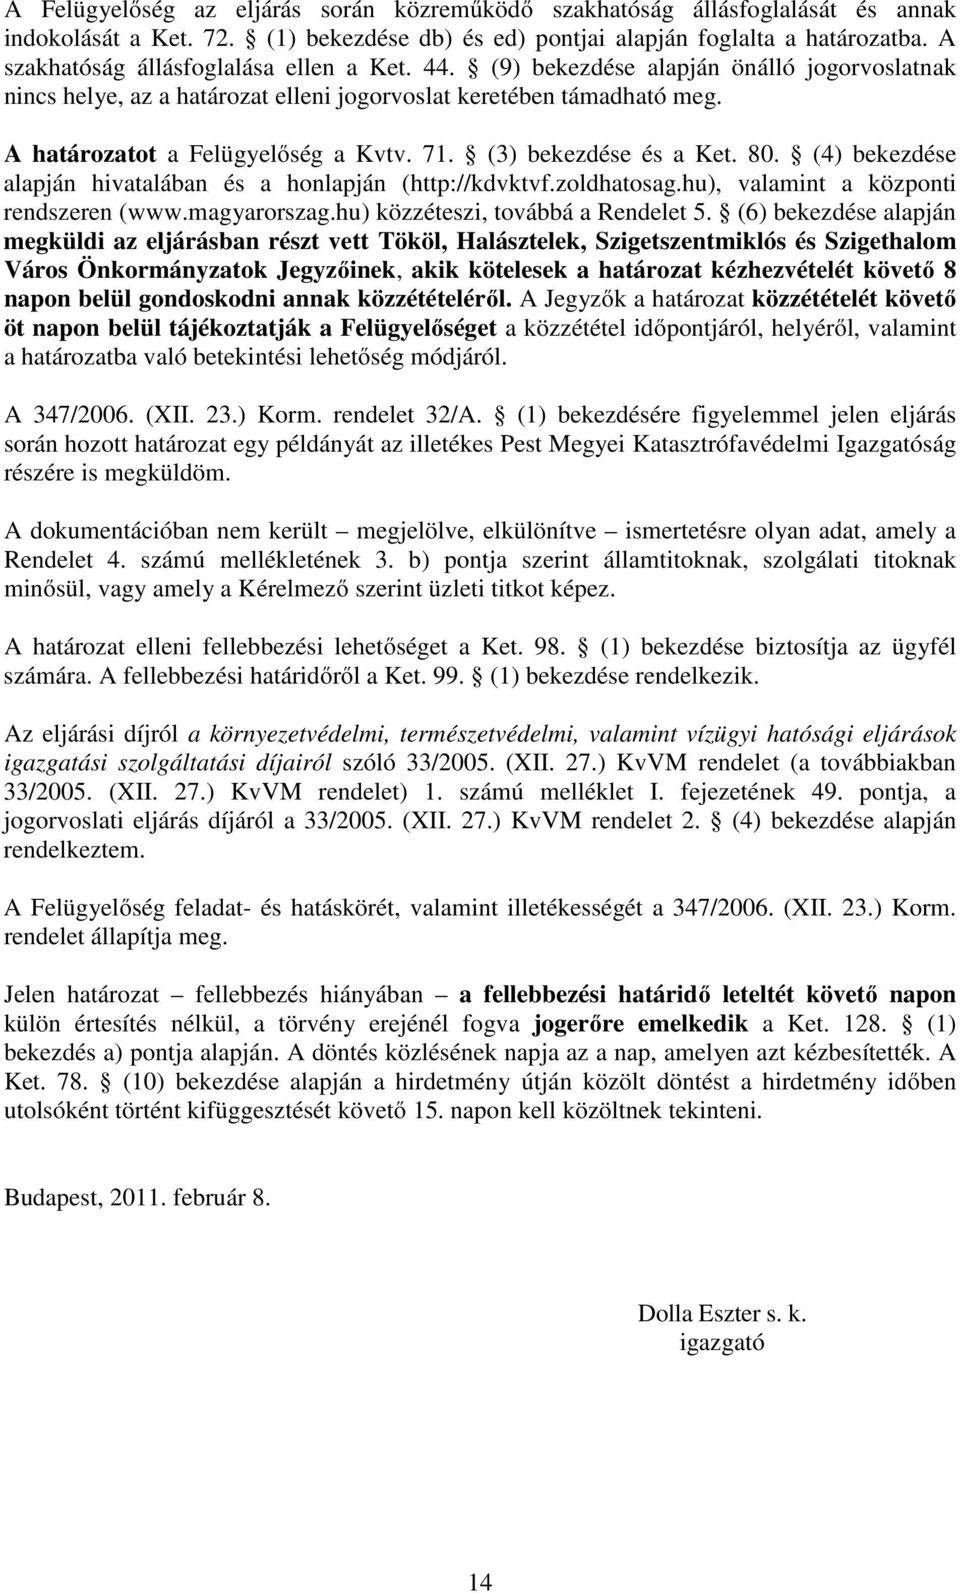 71. (3) bekezdése és a Ket. 80. (4) bekezdése alapján hivatalában és a honlapján (http://kdvktvf.zoldhatosag.hu), valamint a központi rendszeren (www.magyarorszag.hu) közzéteszi, továbbá a Rendelet 5.